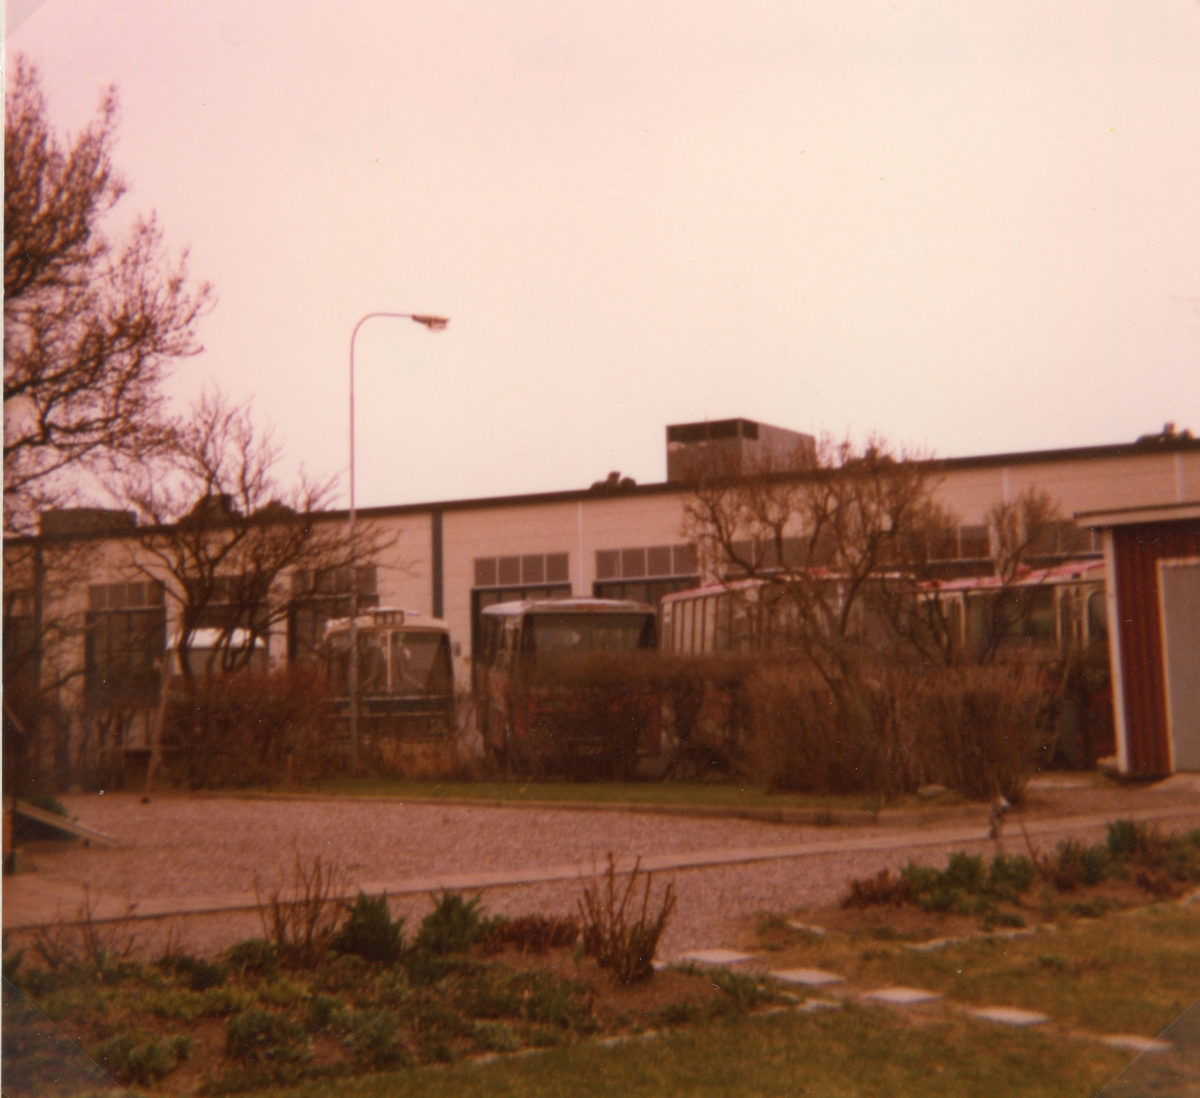 Linköpingtrafikens garage och verkstad i Barhäll, Linköping år 1977 och 1978.